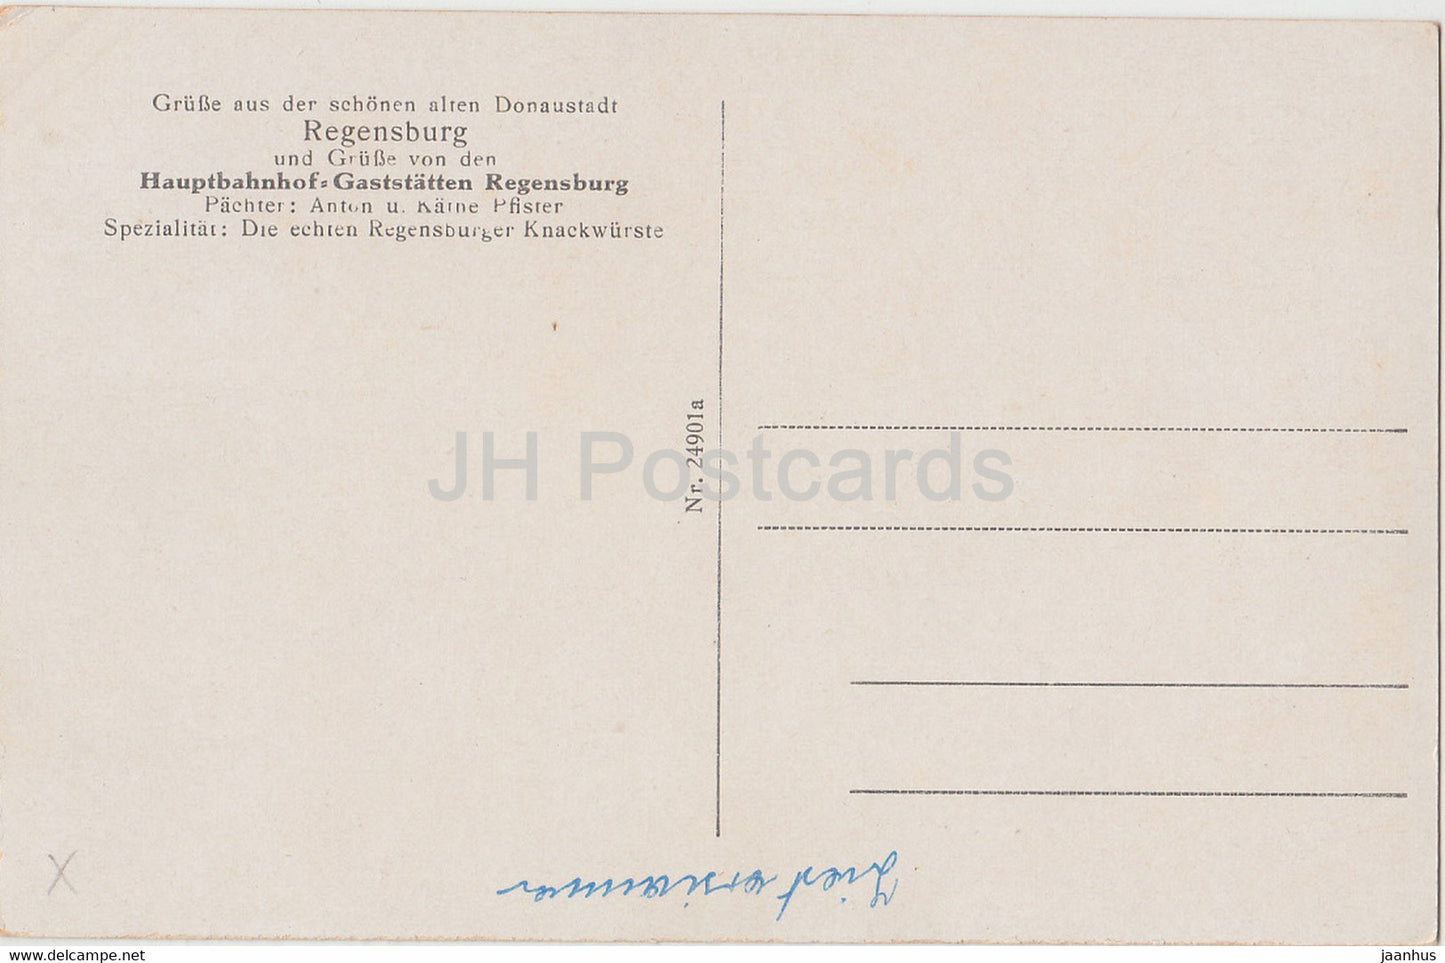 Grusse aus Donaustadt Regensburg - Walhalla - Brucktor - Dom - 24901 - alte Postkarte - Deutschland - unbenutzt